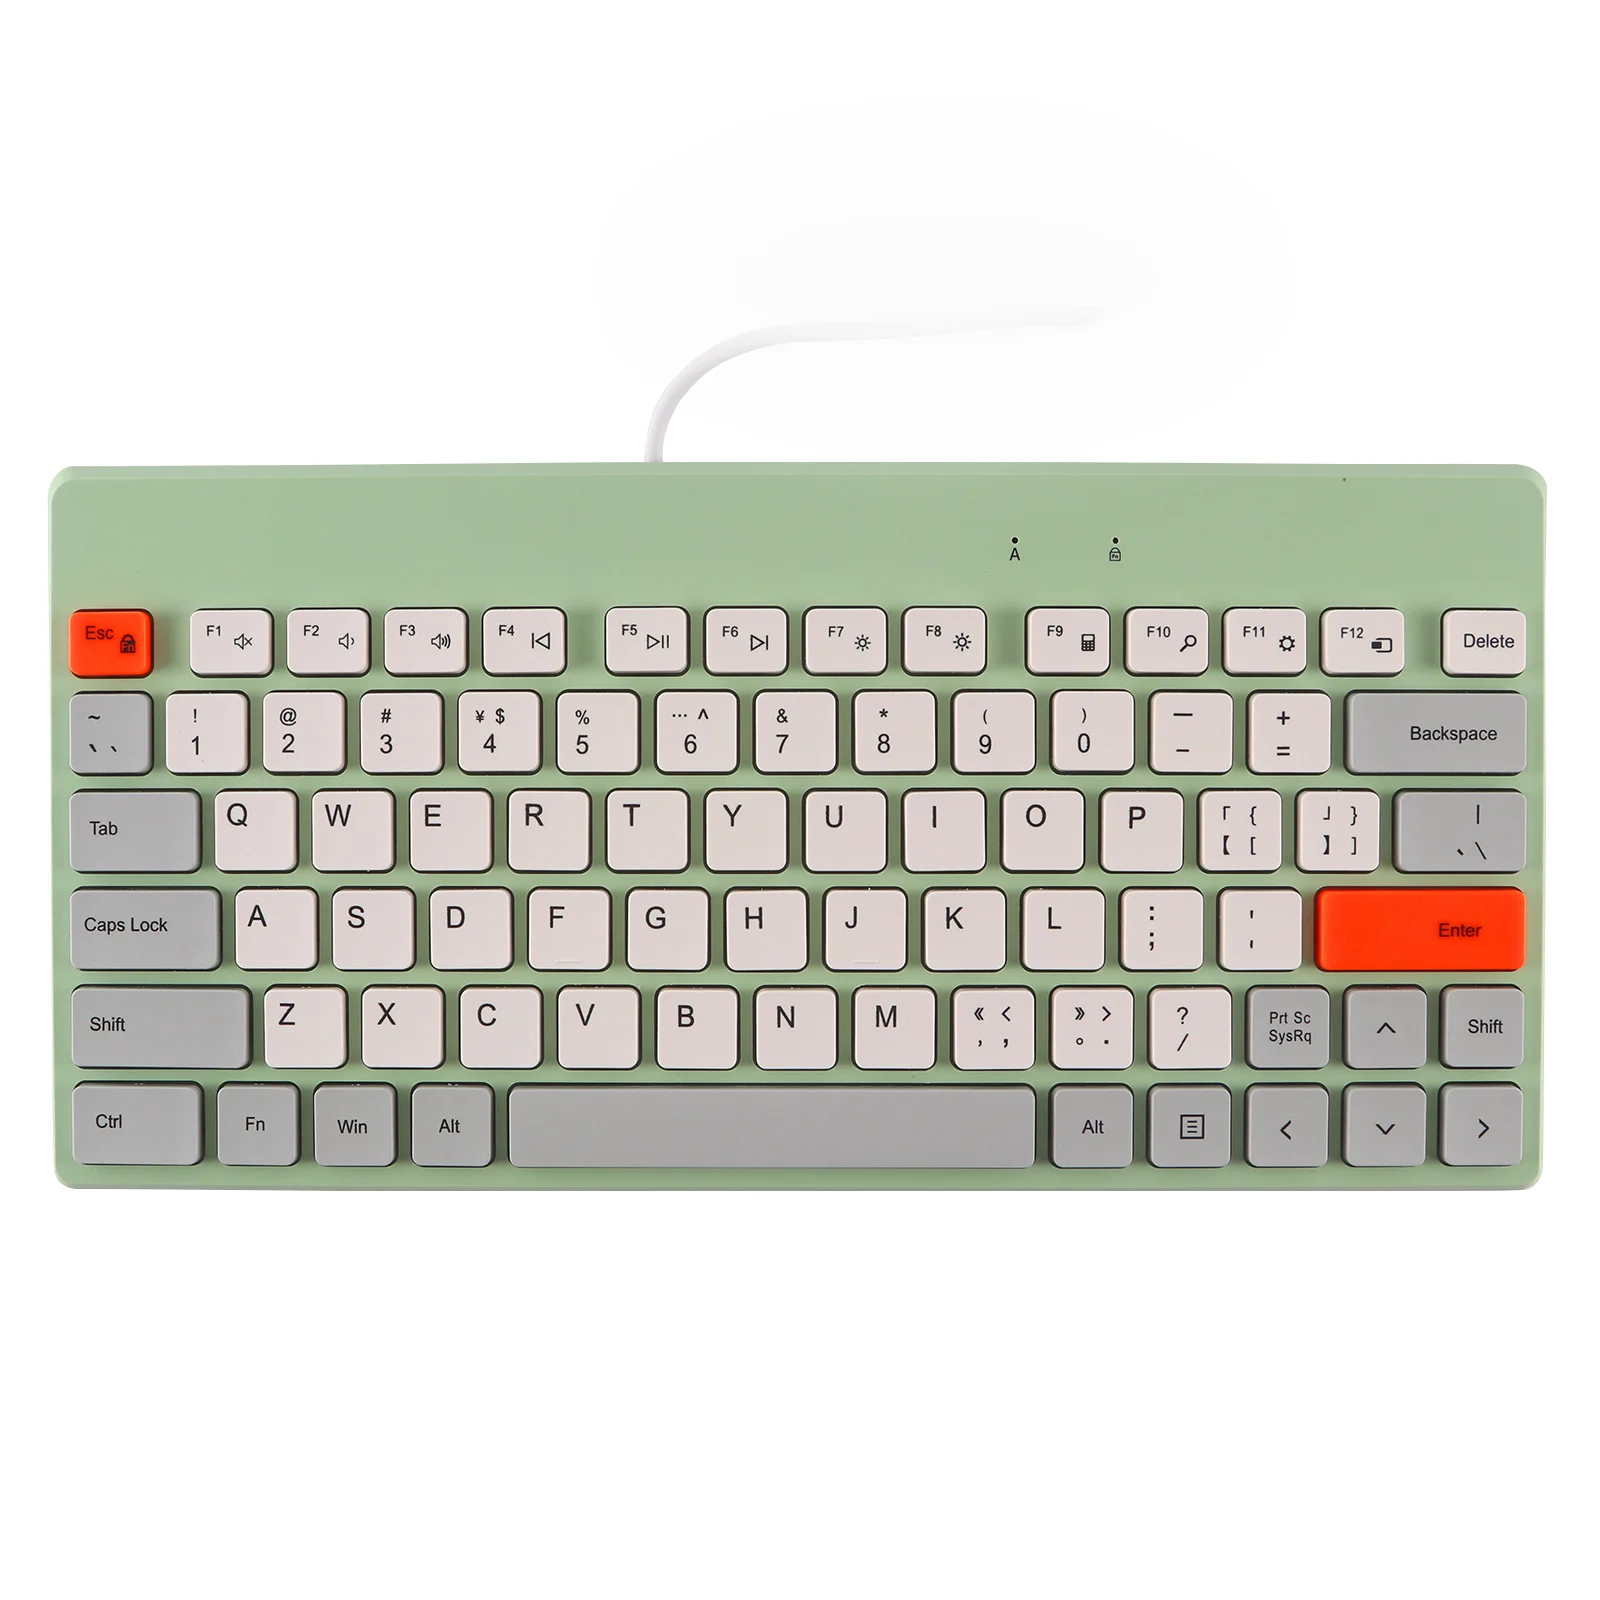 

BOW 78 Keys Keyboard Pixel Game Style Keyboards Silent Ergonomic Gaming Keypad for Computer PC Desktop iMac Laptop Gamer Gift